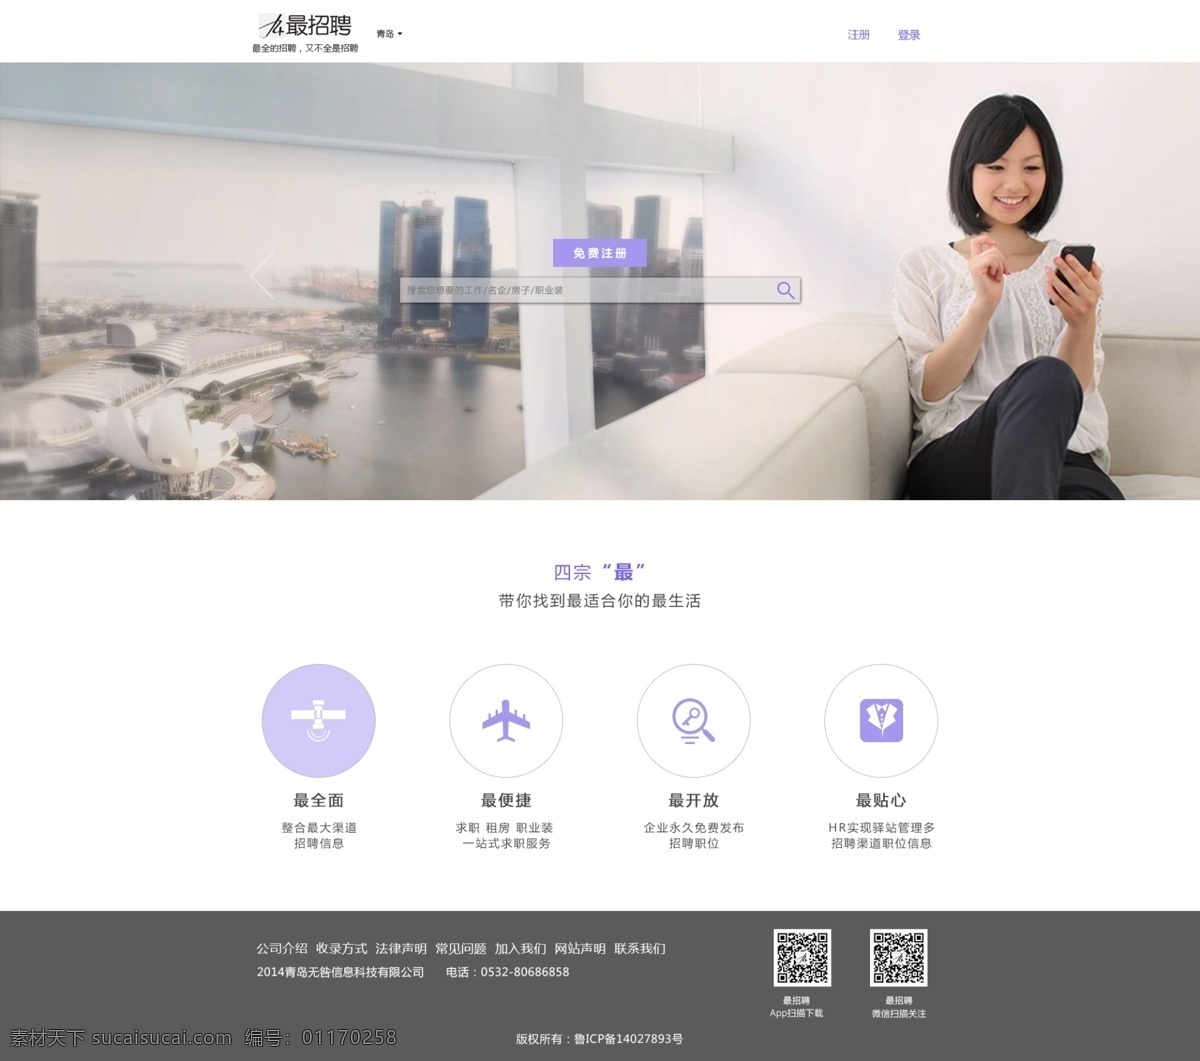 清新 招聘 网站首页 简洁 漂亮 清晰 web 界面设计 中文模板 白色